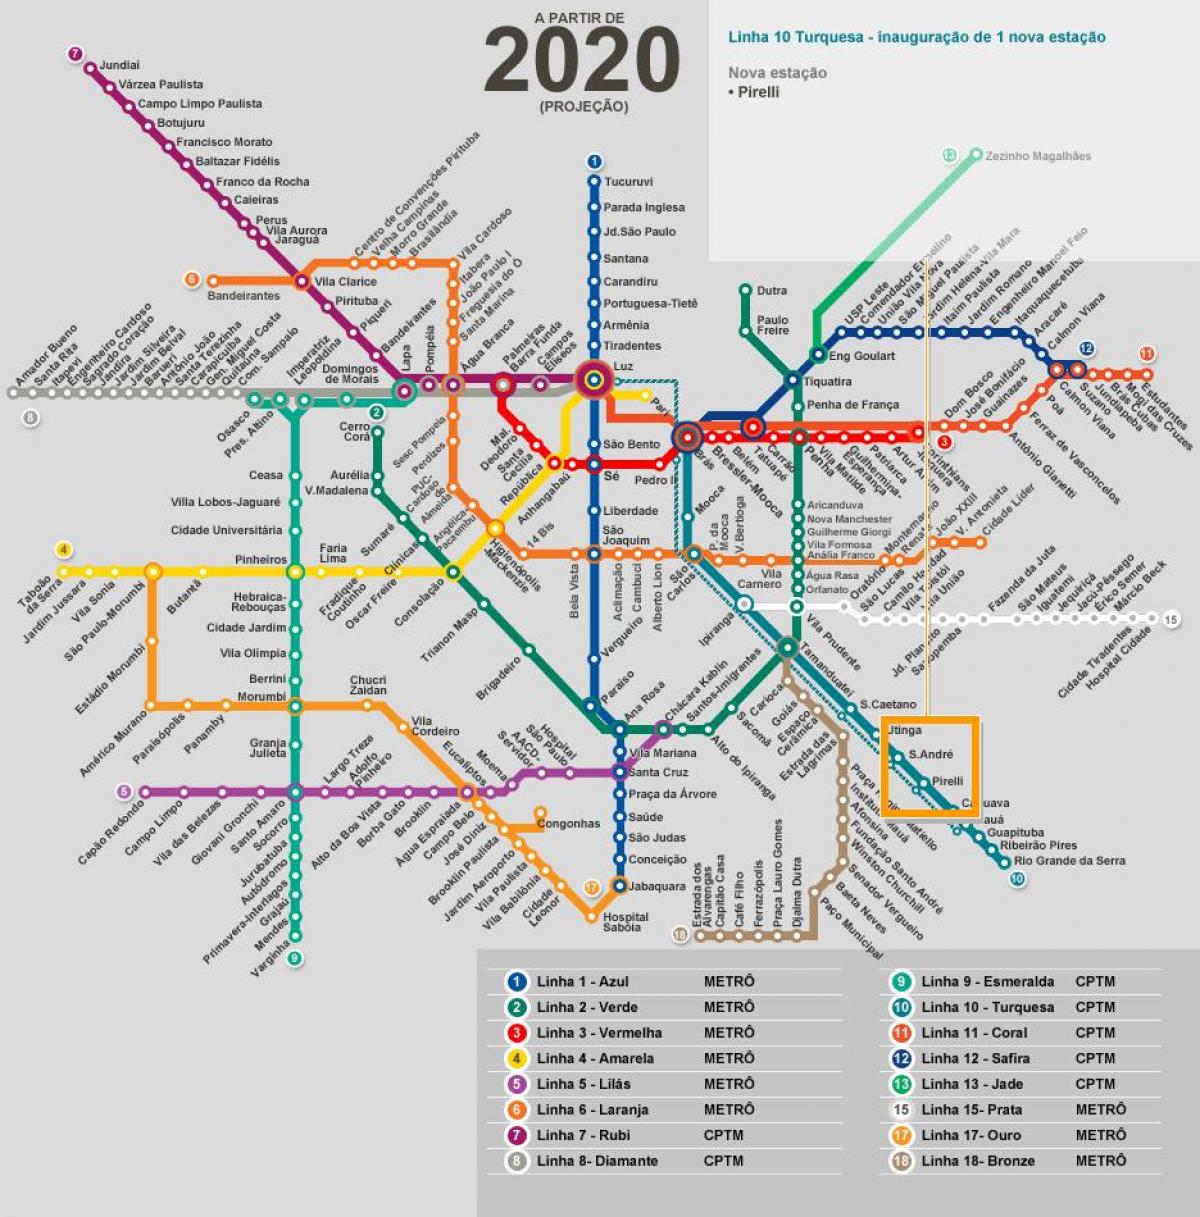 नक्शे के साओ पाउलो मेट्रो नेटवर्क